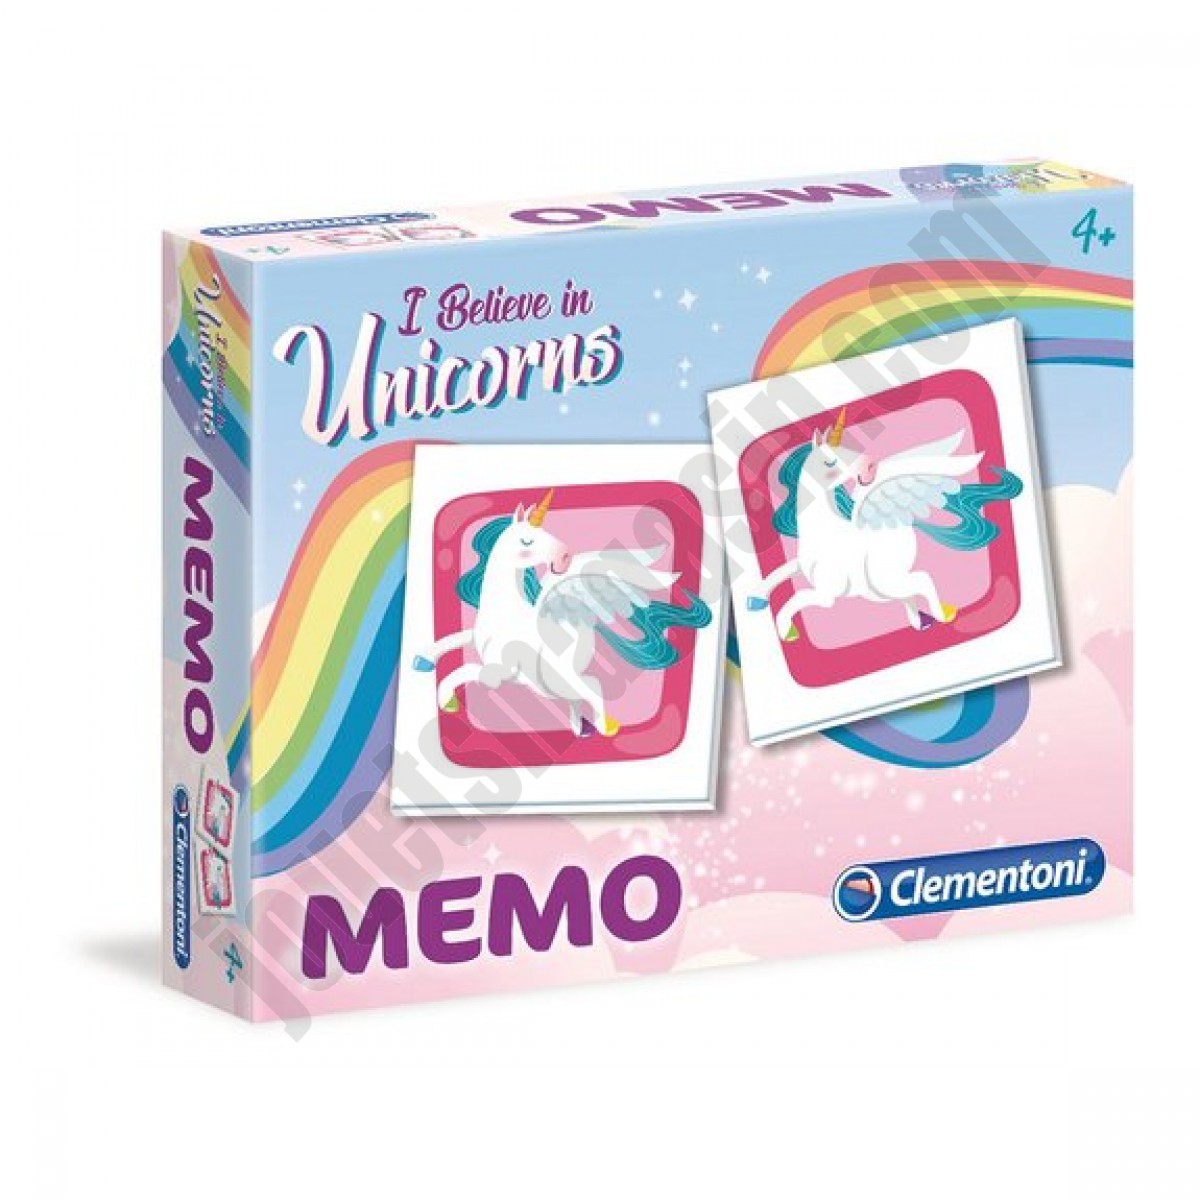 Memo licornes ◆◆◆ Nouveau - Memo licornes ◆◆◆ Nouveau